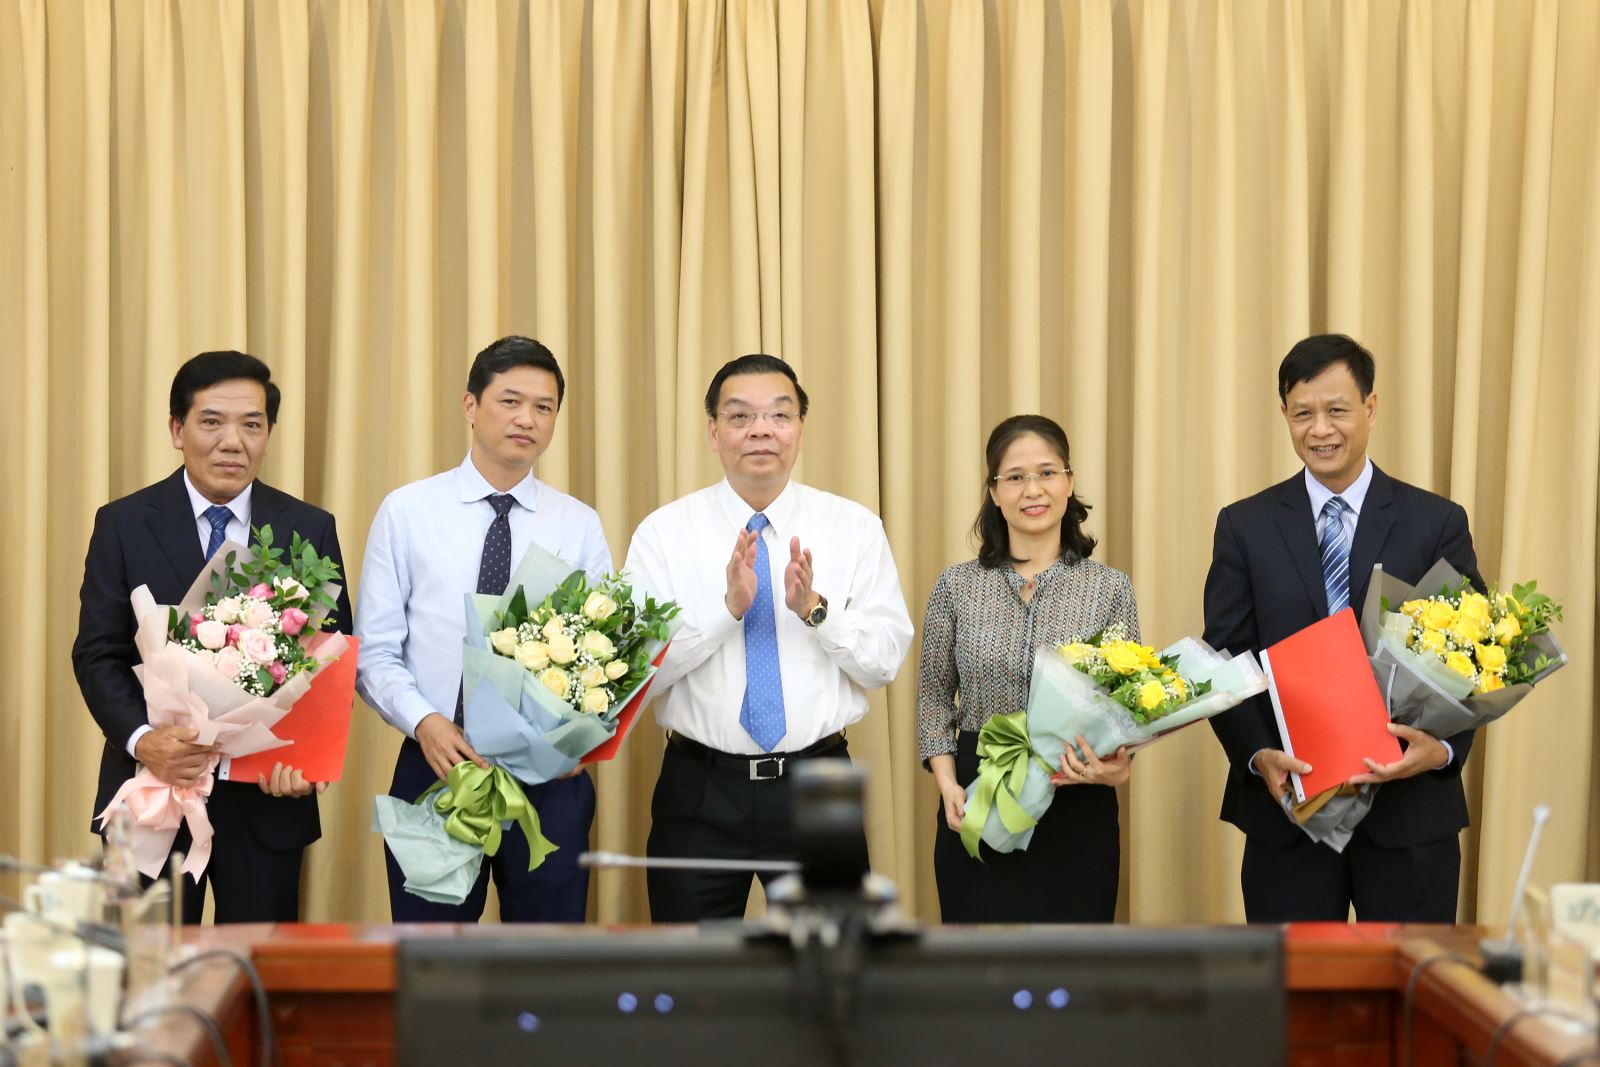 Bộ trưởng Chu Ngọc Anh (giữa) trao quyết định bổ nhiệm và chúc mừng các đồng chí được bổ nhiệm | Ảnh: Bộ KH&CN